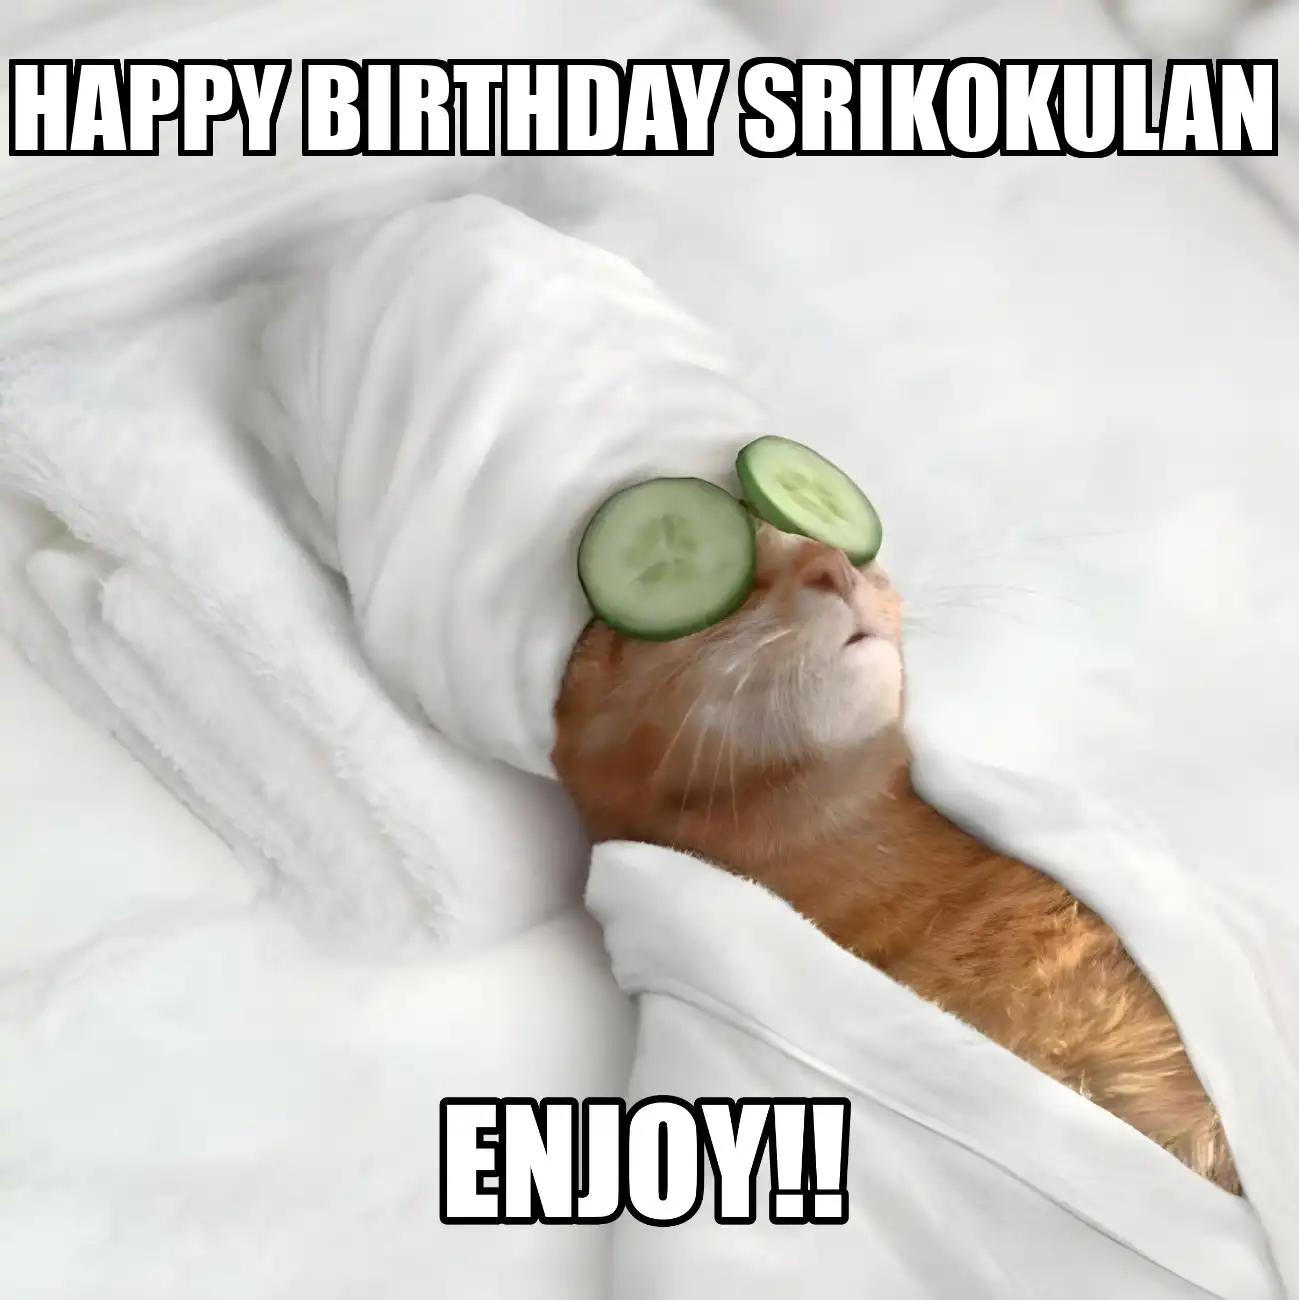 Happy Birthday Srikokulan Enjoy Cat Meme